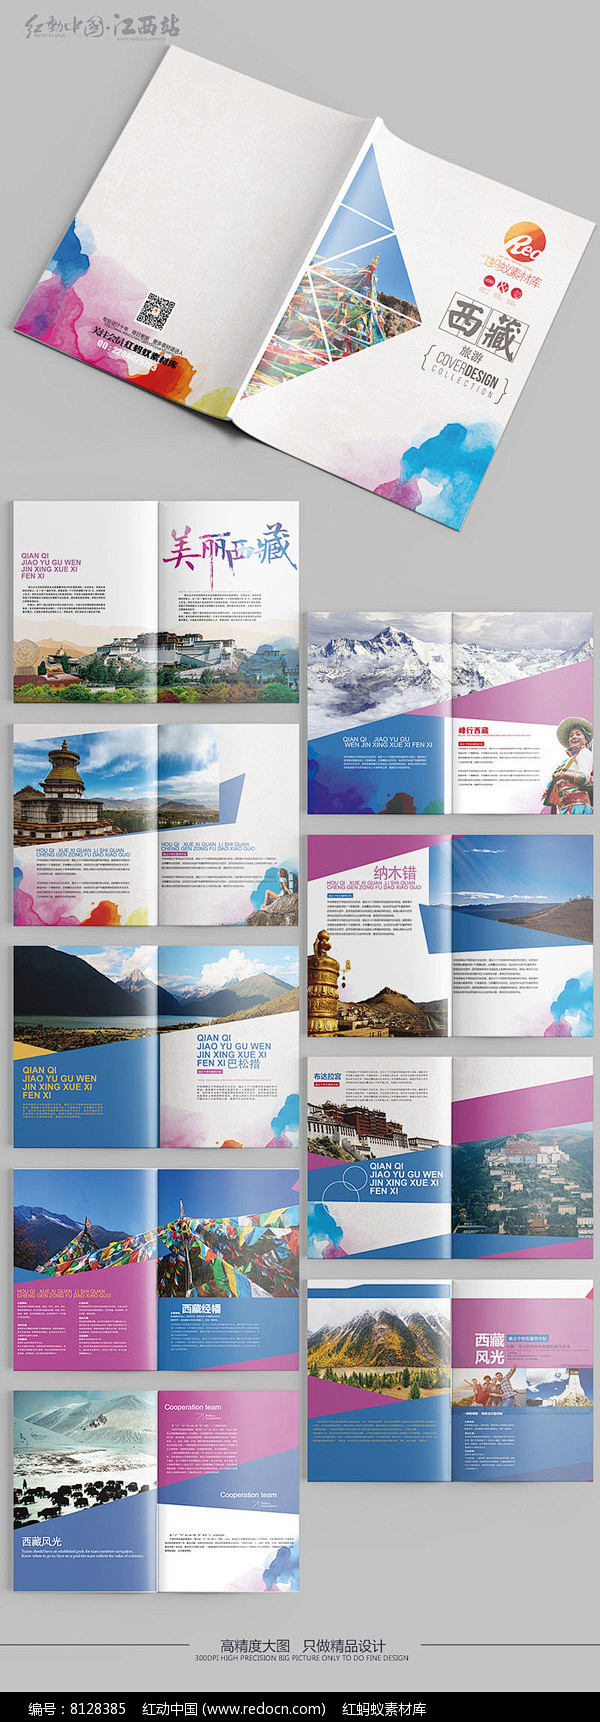 西藏旅游画册设计图片 旅游画册 旅游画册...